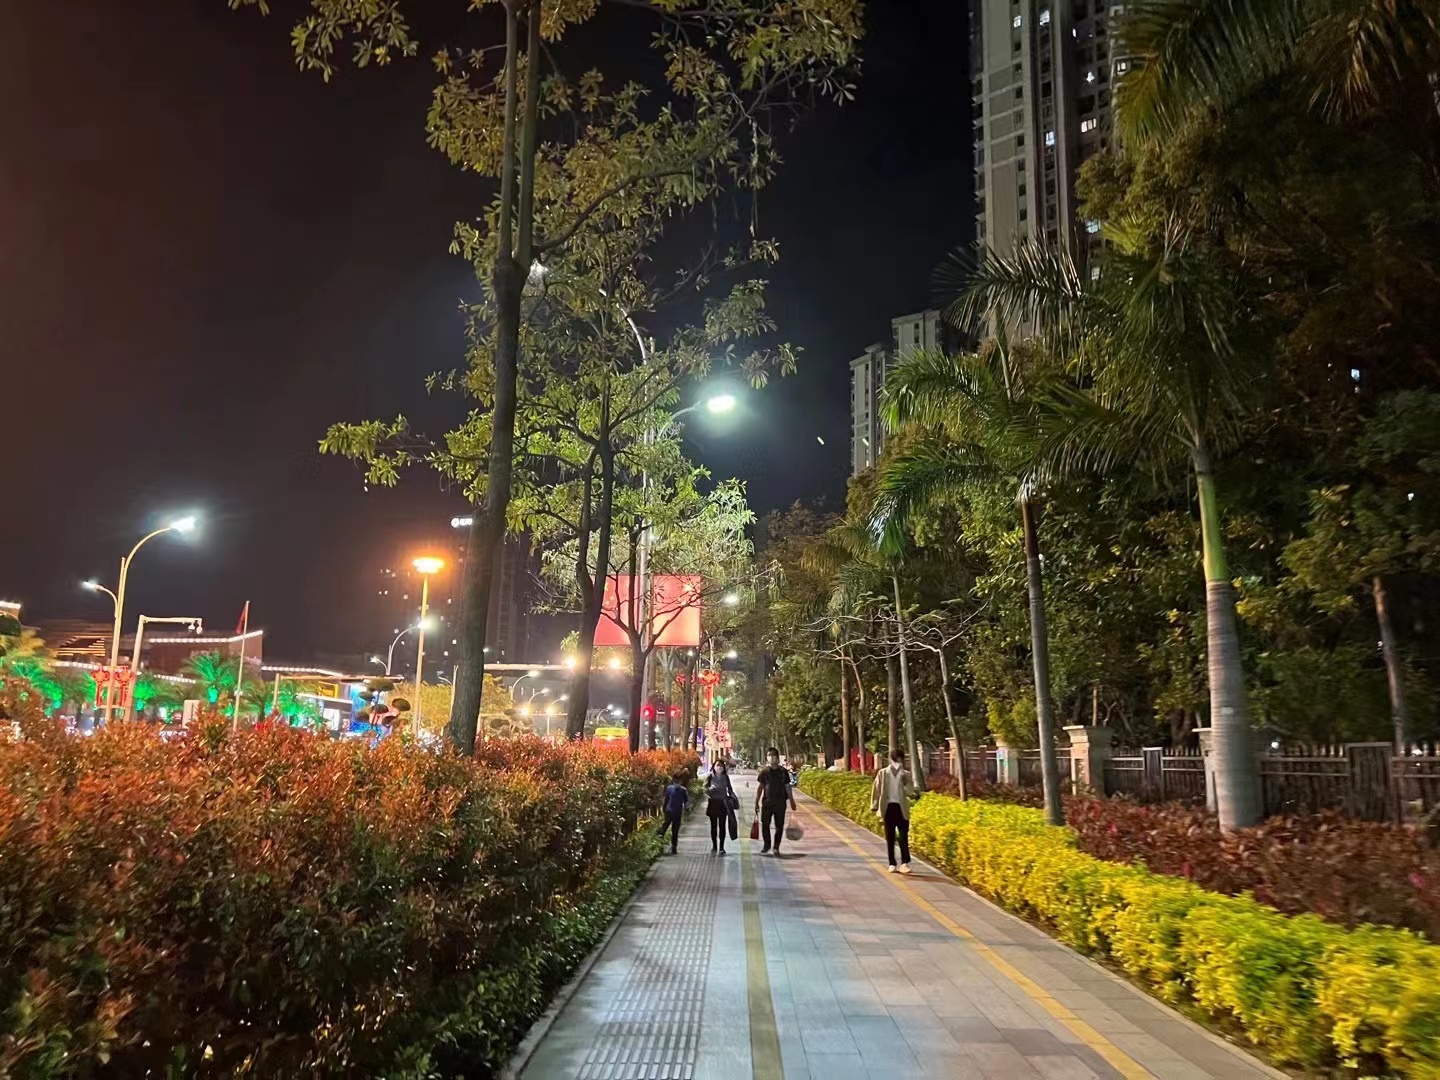 第三届“杭州市最美绿道”评选启动 全域绿道各展特色竞相争妍